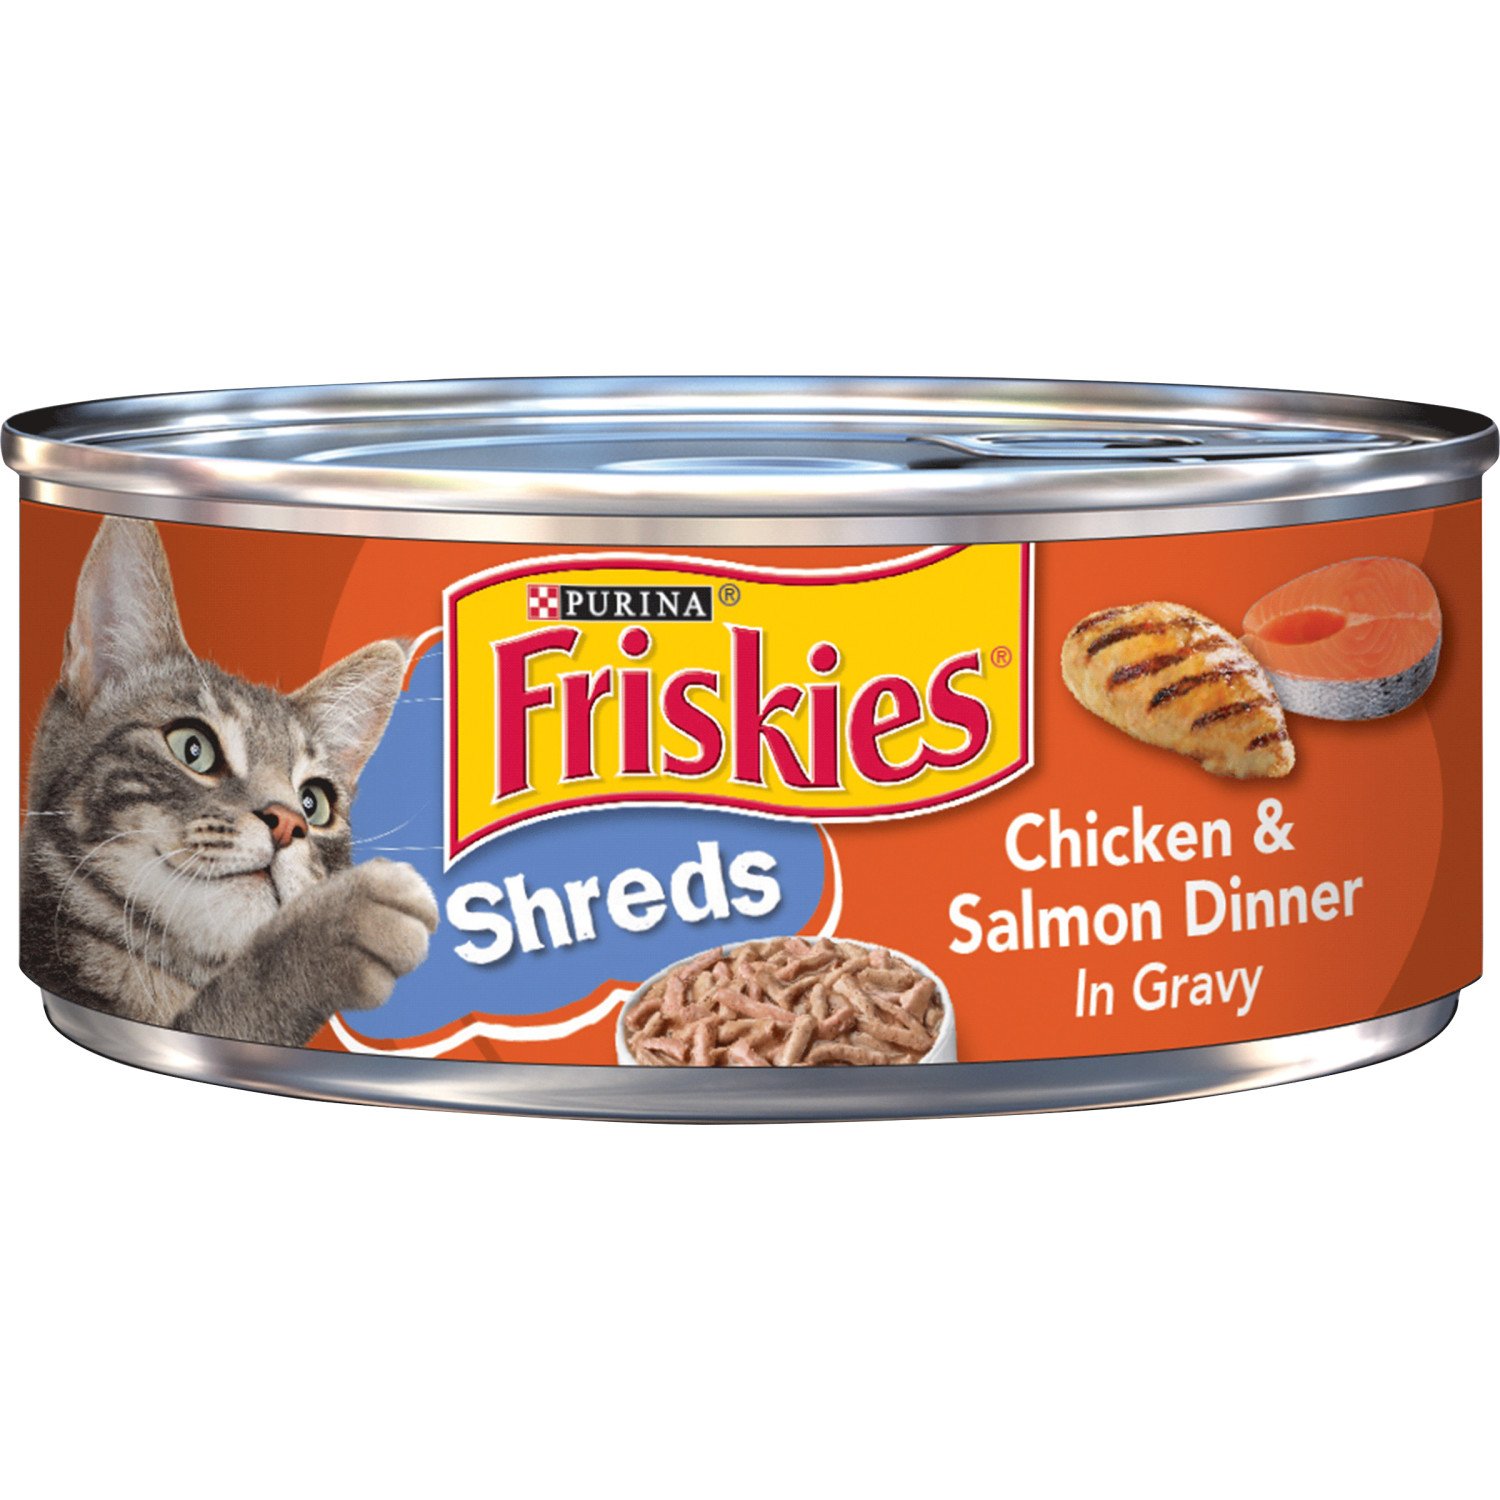 Purina Friskies Shreds Chicken & Salmon Dinner in Gravy Wet Cat Food ...